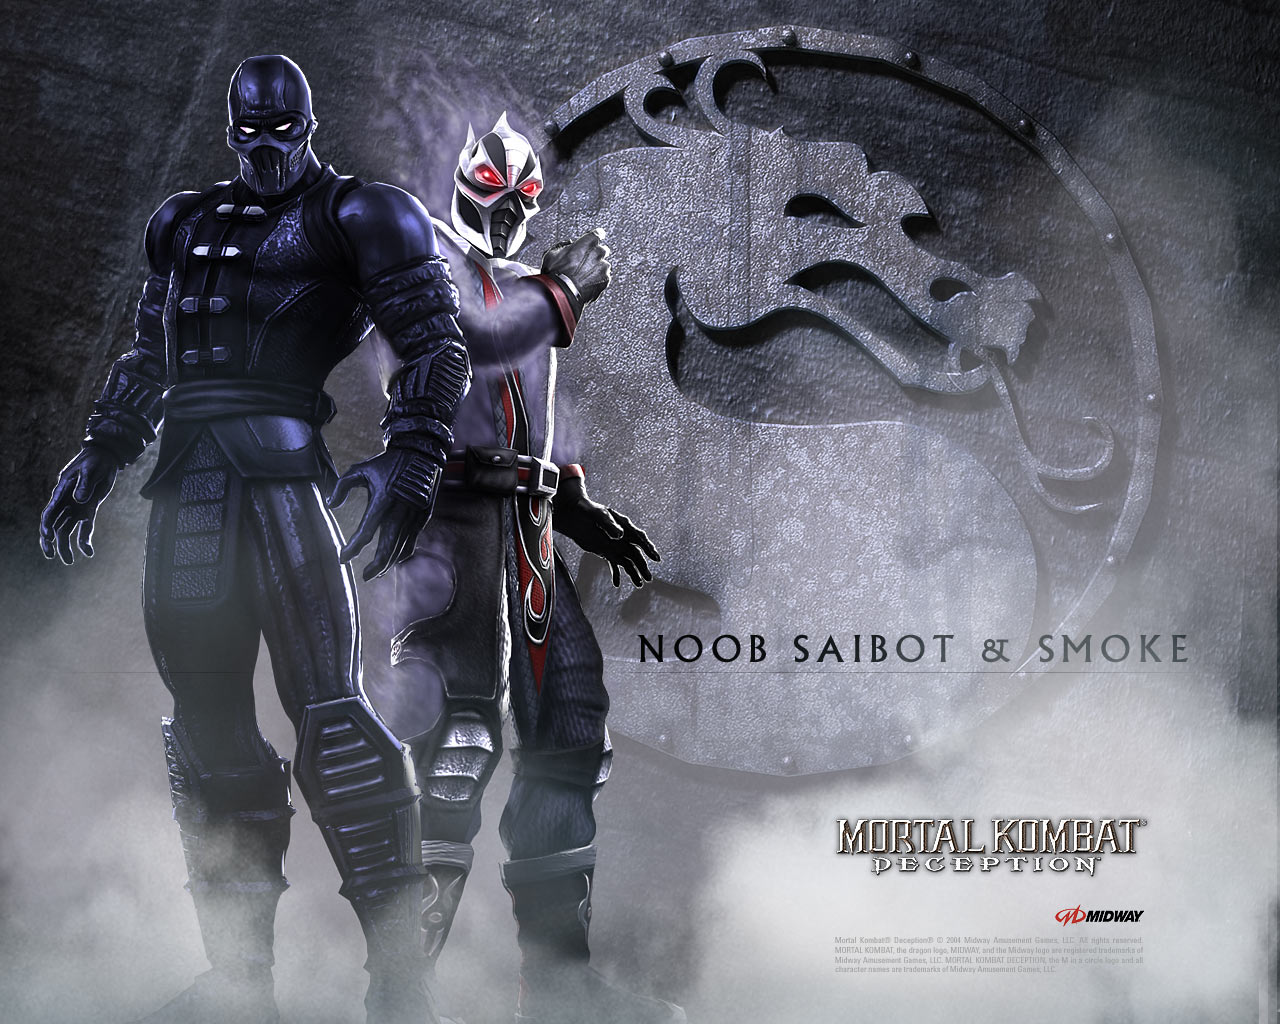 mortal kombat, video game, noob saibot, smoke (mortal kombat) wallpaper for mobile